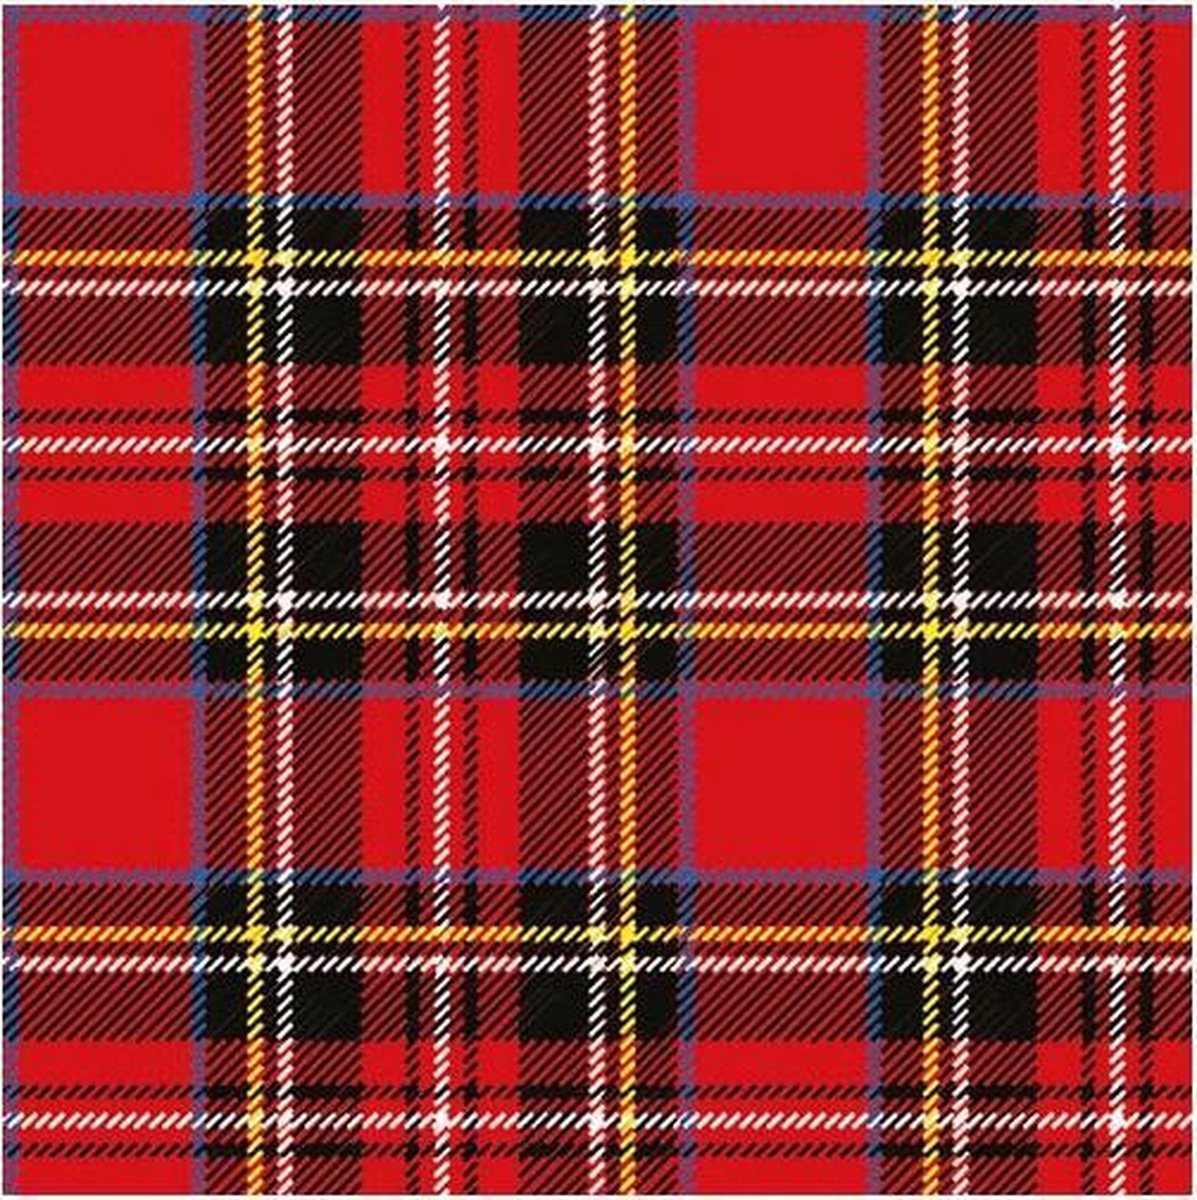 60x Rode Schotse ruit servetten 33 x 33 cm - papieren wegwerp servetjes - Rood/Schotse ruit versieringen/decoratiestafeldecoraties/feestversiering - Ambiente